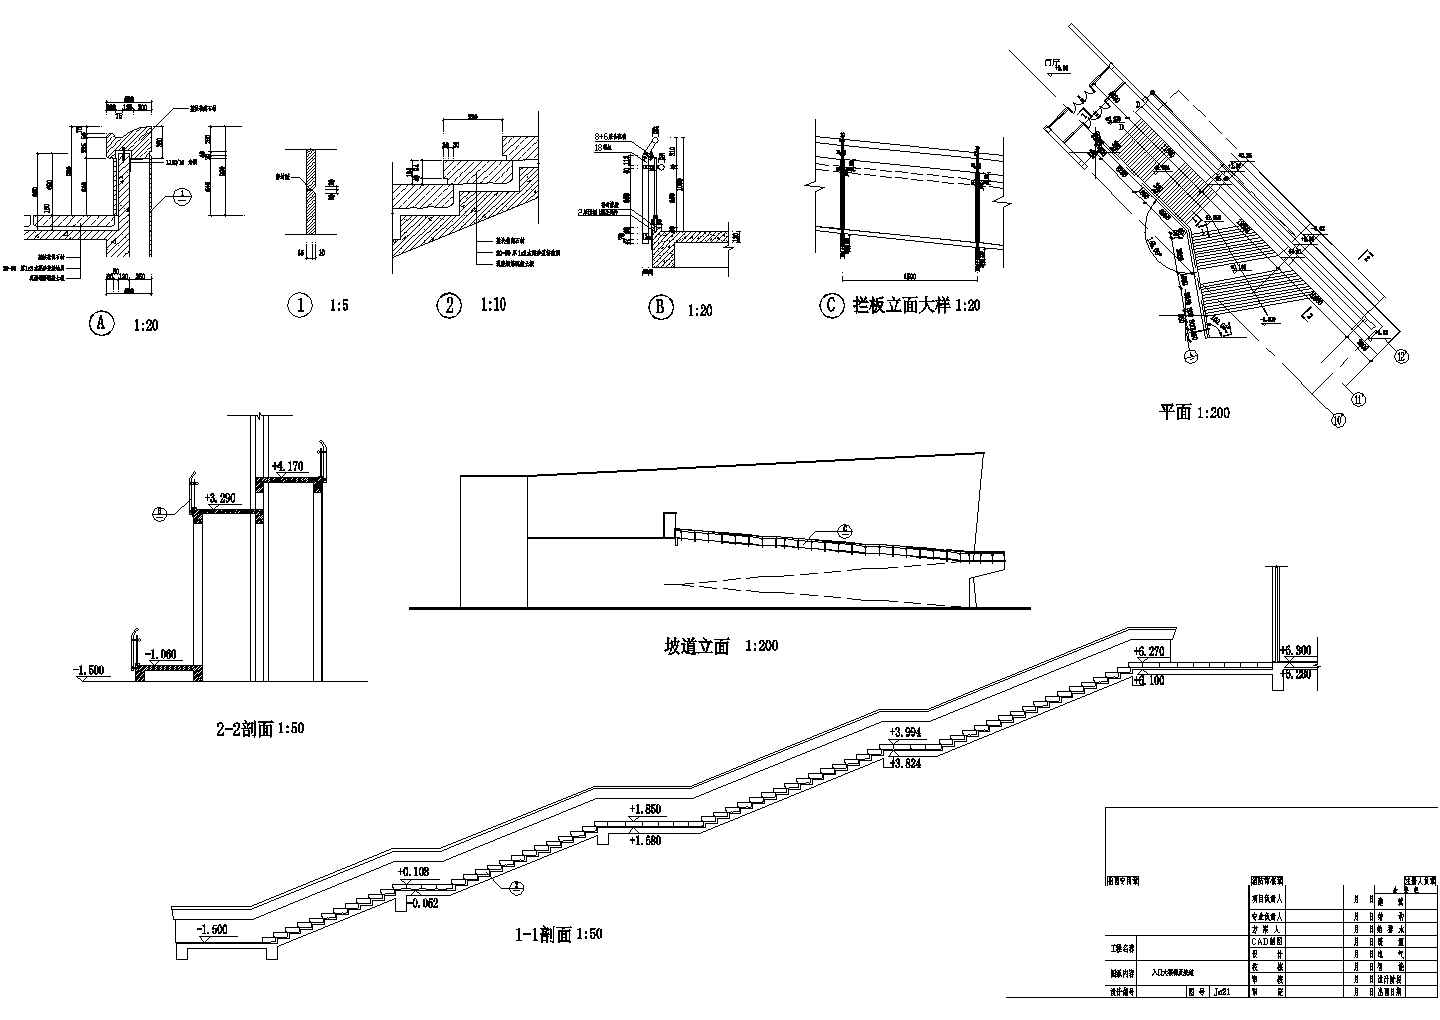 某2+2夹层扇型博物馆扩大工程建筑初步设计CAD方案图入口大楼梯及坡道